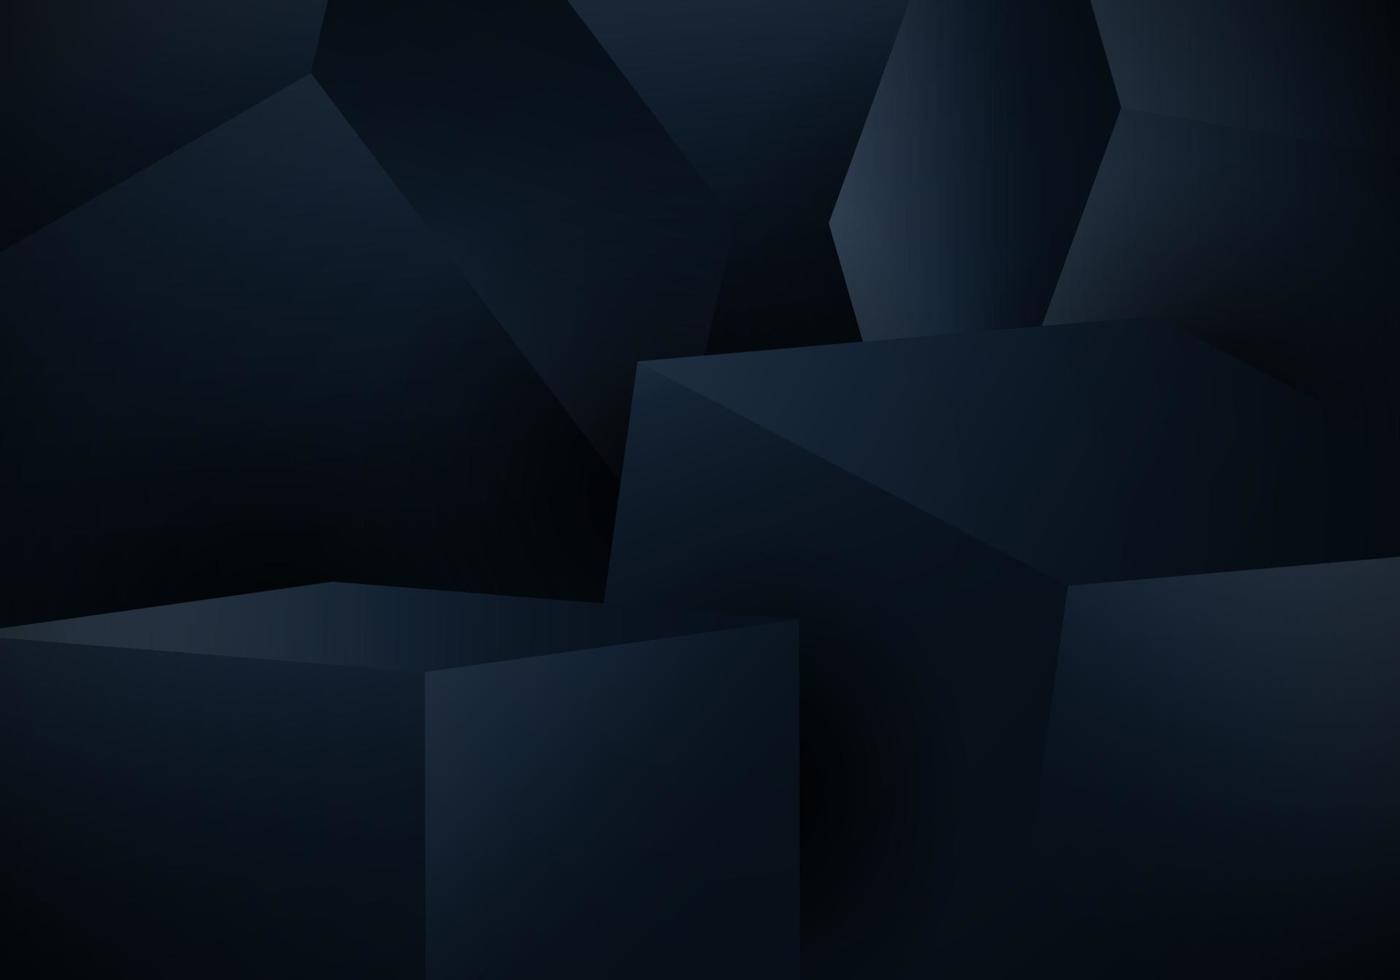 caixa de cubo 3d azul abstrato em fundo escuro vetor